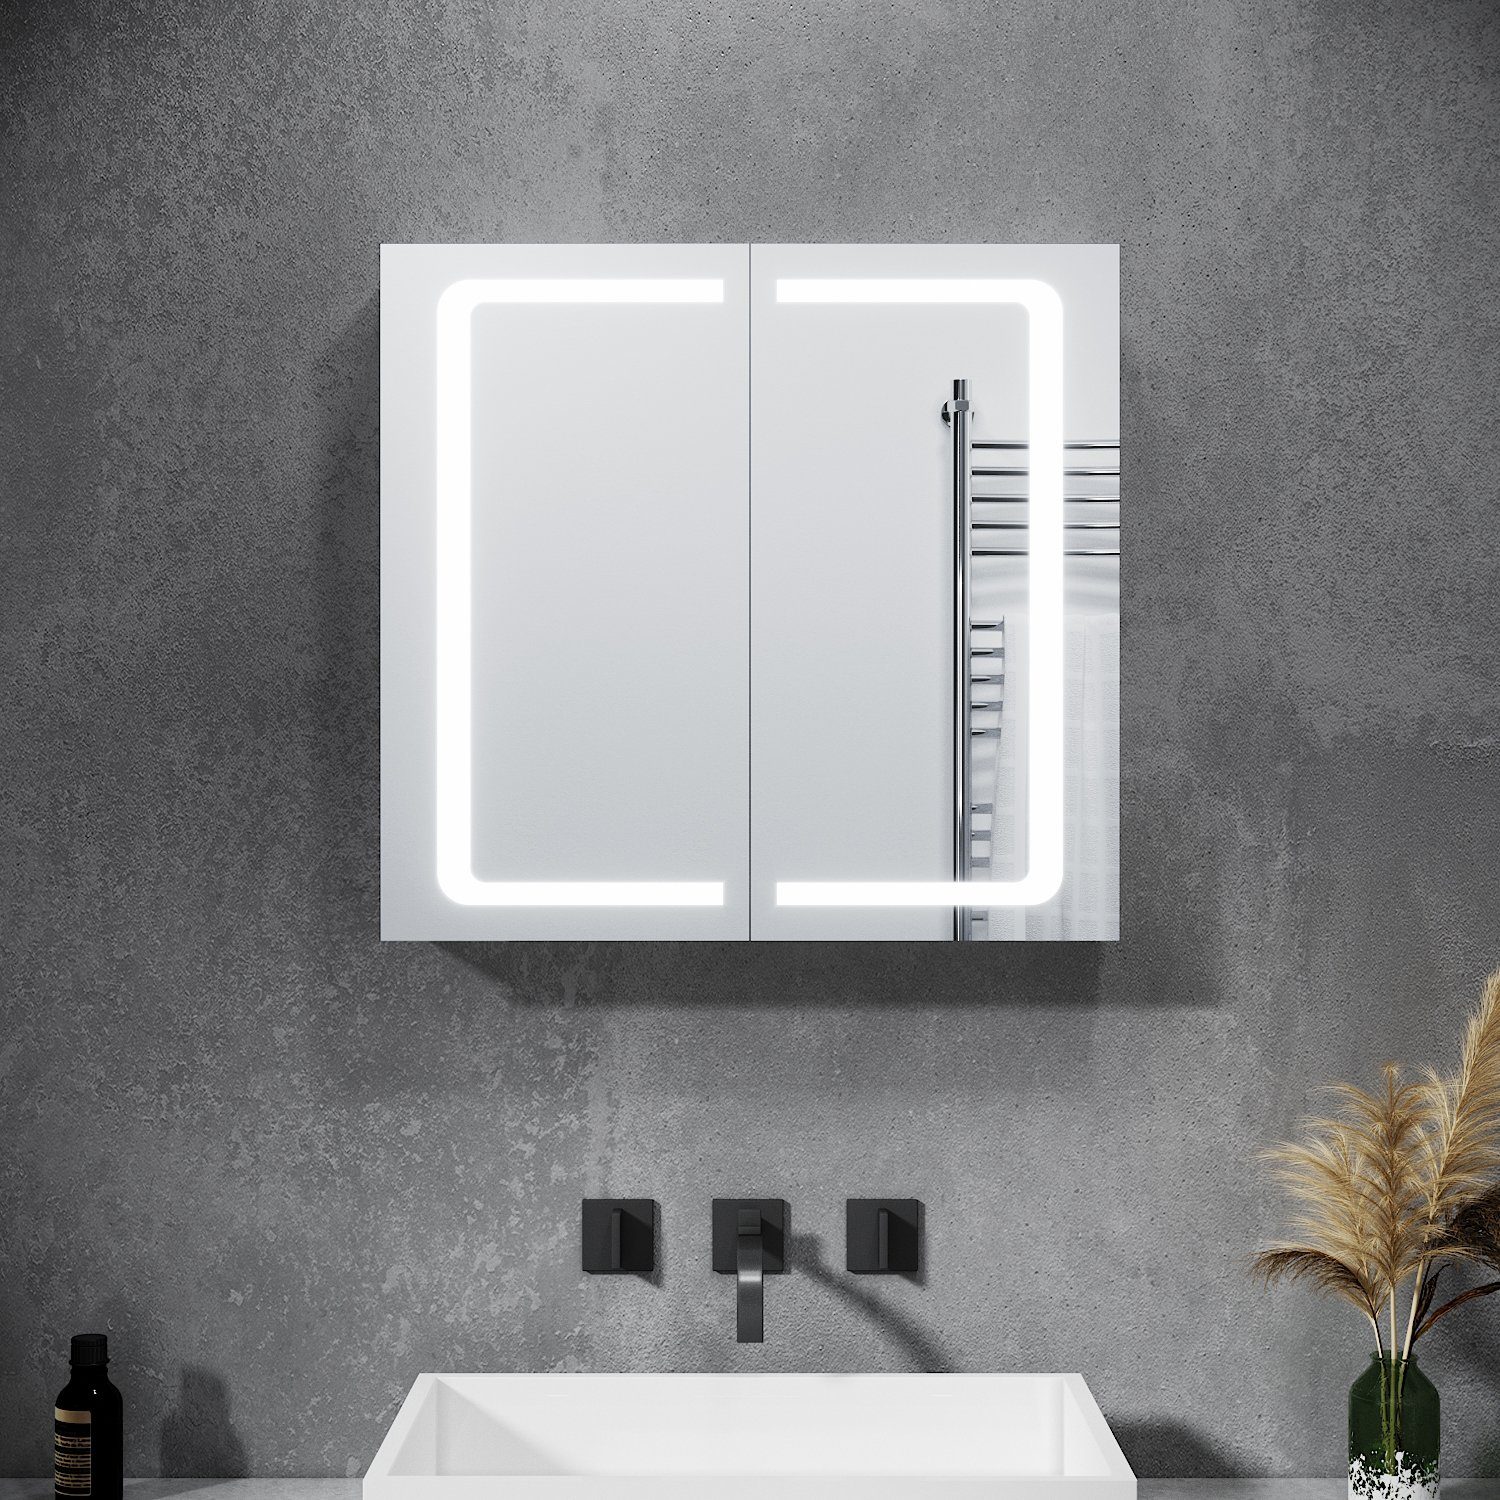 SONNI Spiegelschrank LED Spiegelschrank 2türig 70 x 65 x13cm  Badezimmerspiegel wandschrank Badschrank mit Beleuchtung mit Steckdose